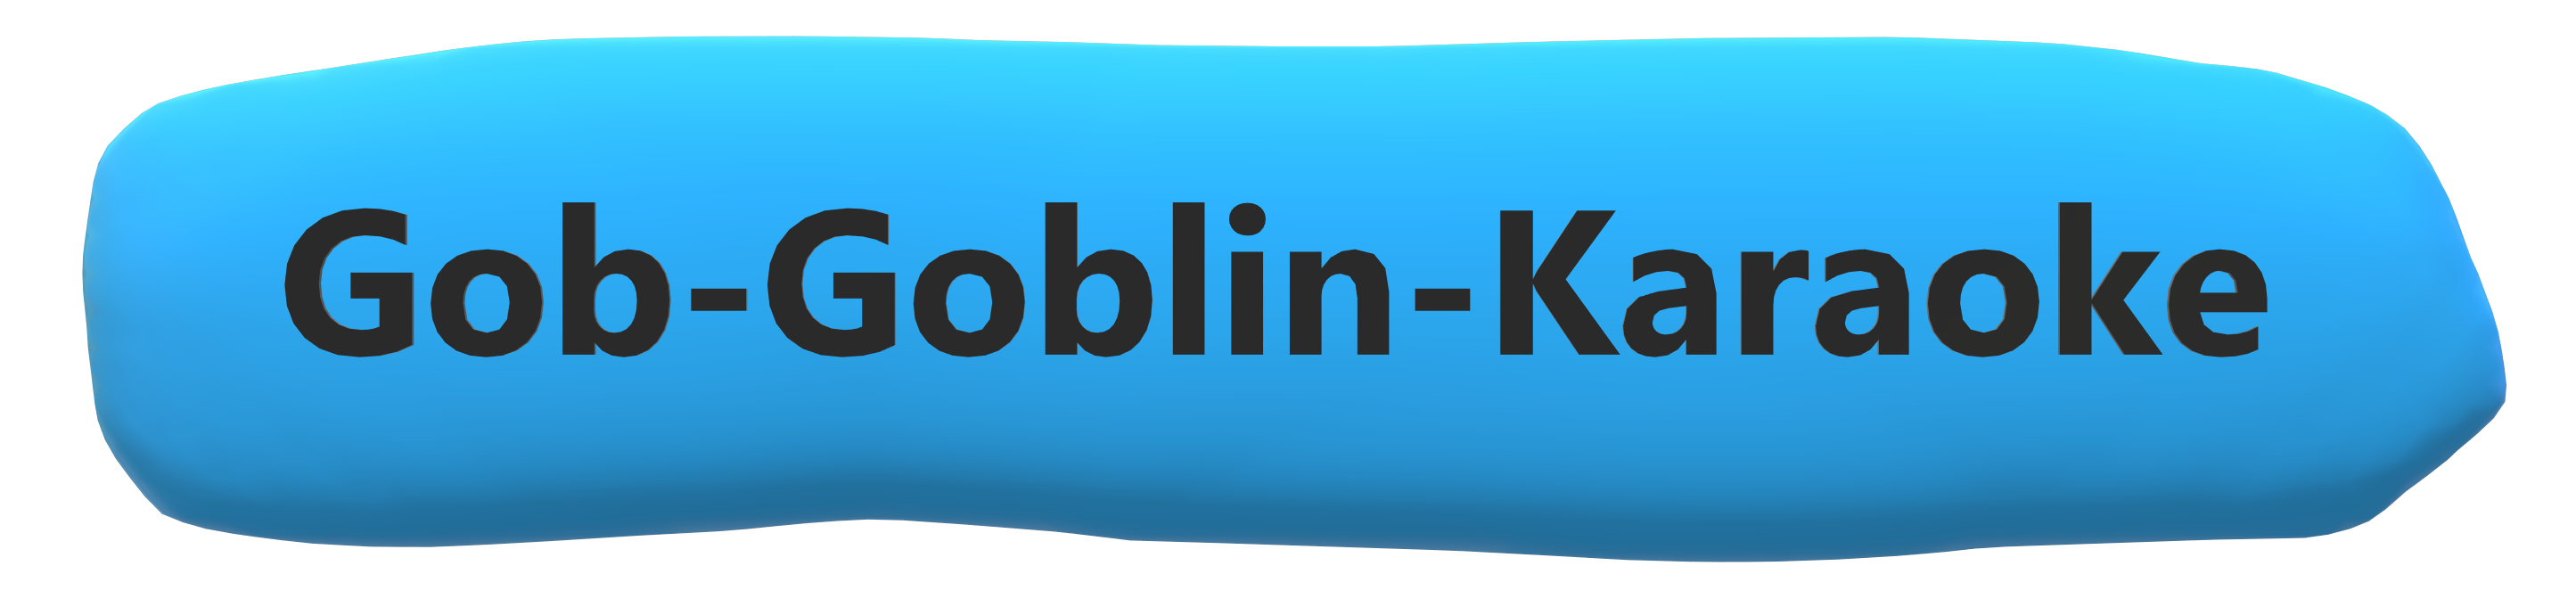 Gob Goblin Karaoke (full release)